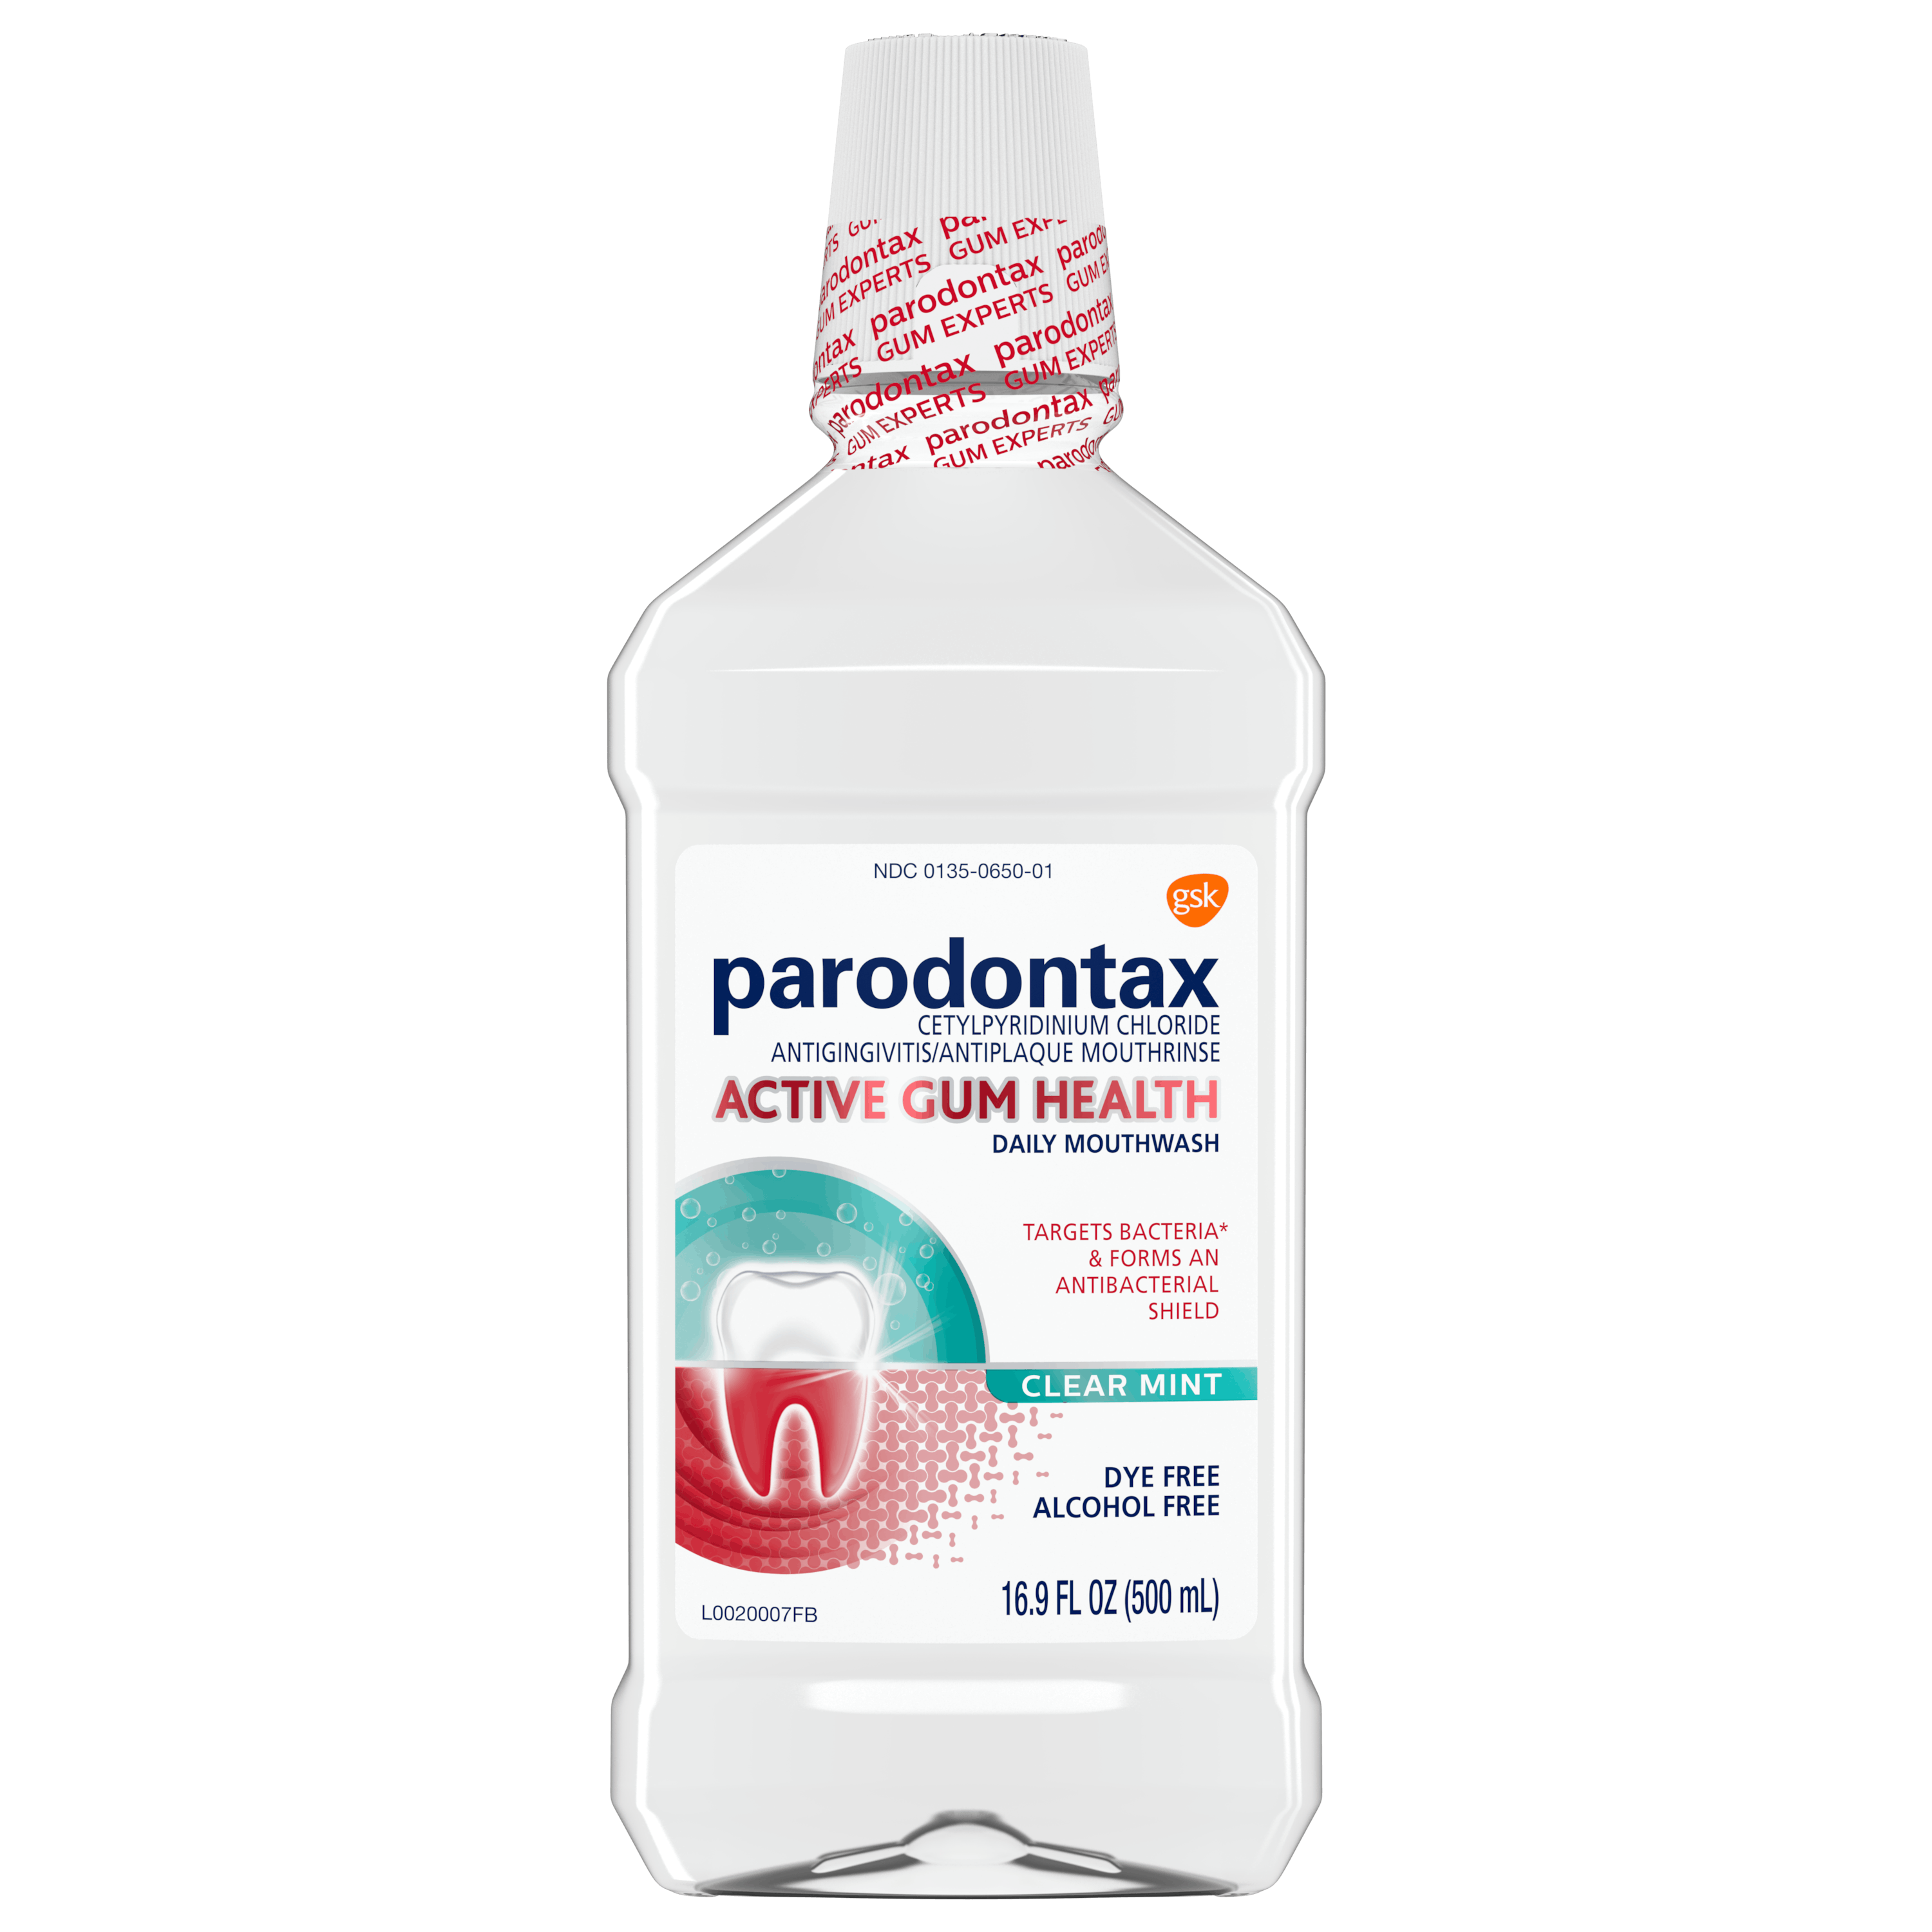 parodontax Active Gum Health Clear Mint Mouthwash